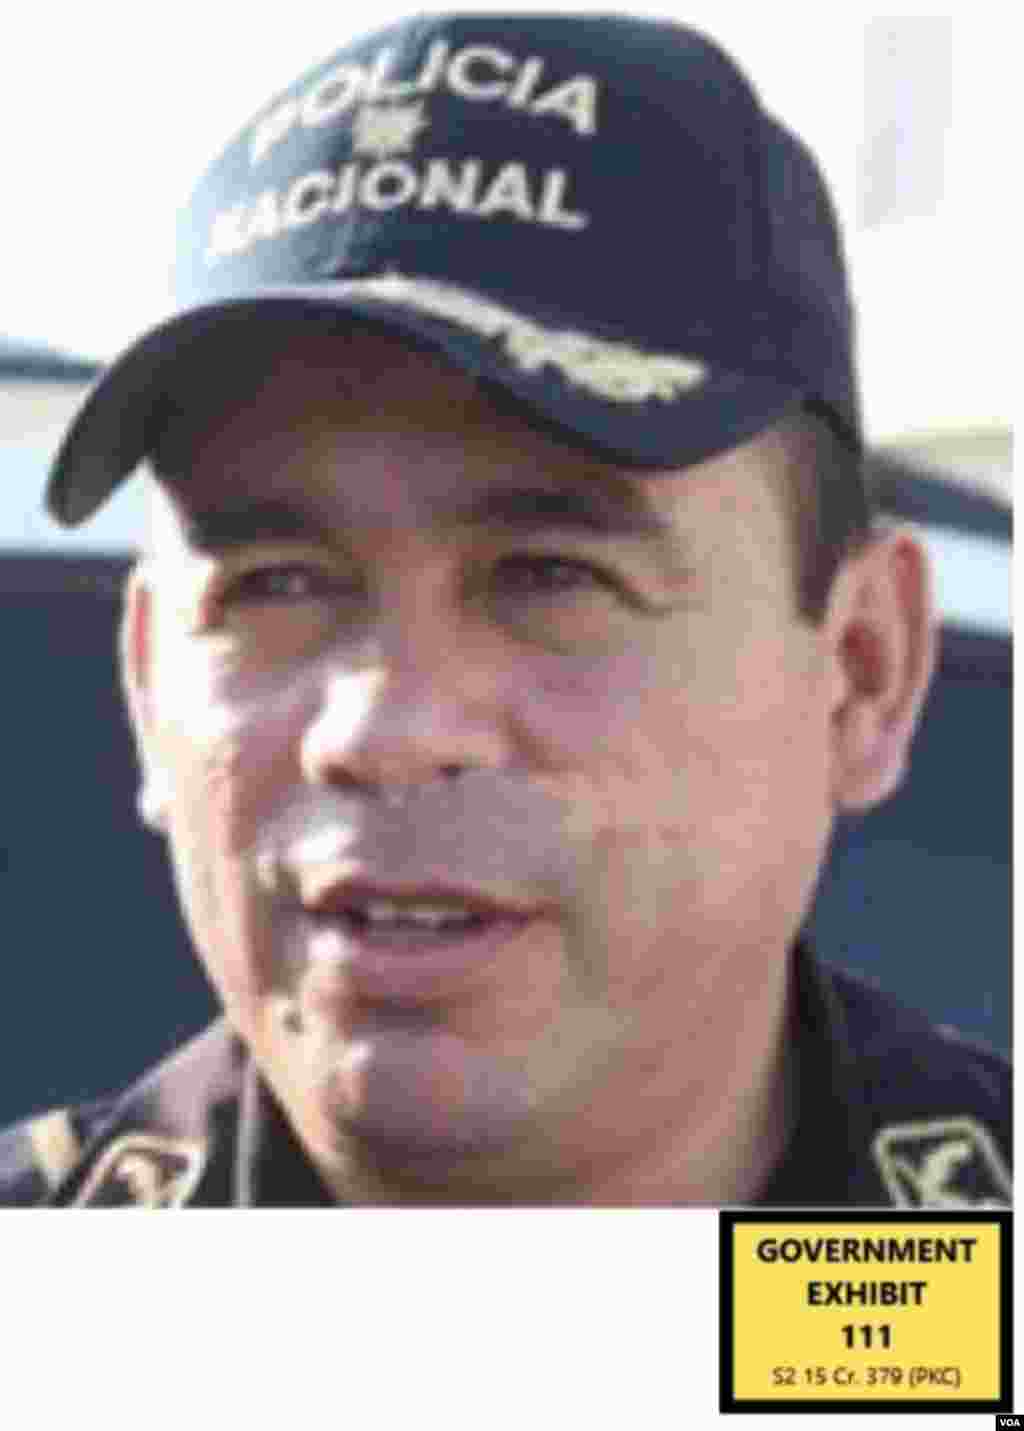 Mauricio Hernández Pineda, oficial de policía, primo de Tony Hernández. Supuestamente ayudaba con tráfico de drogas aportando información de retenes e investigaciones.